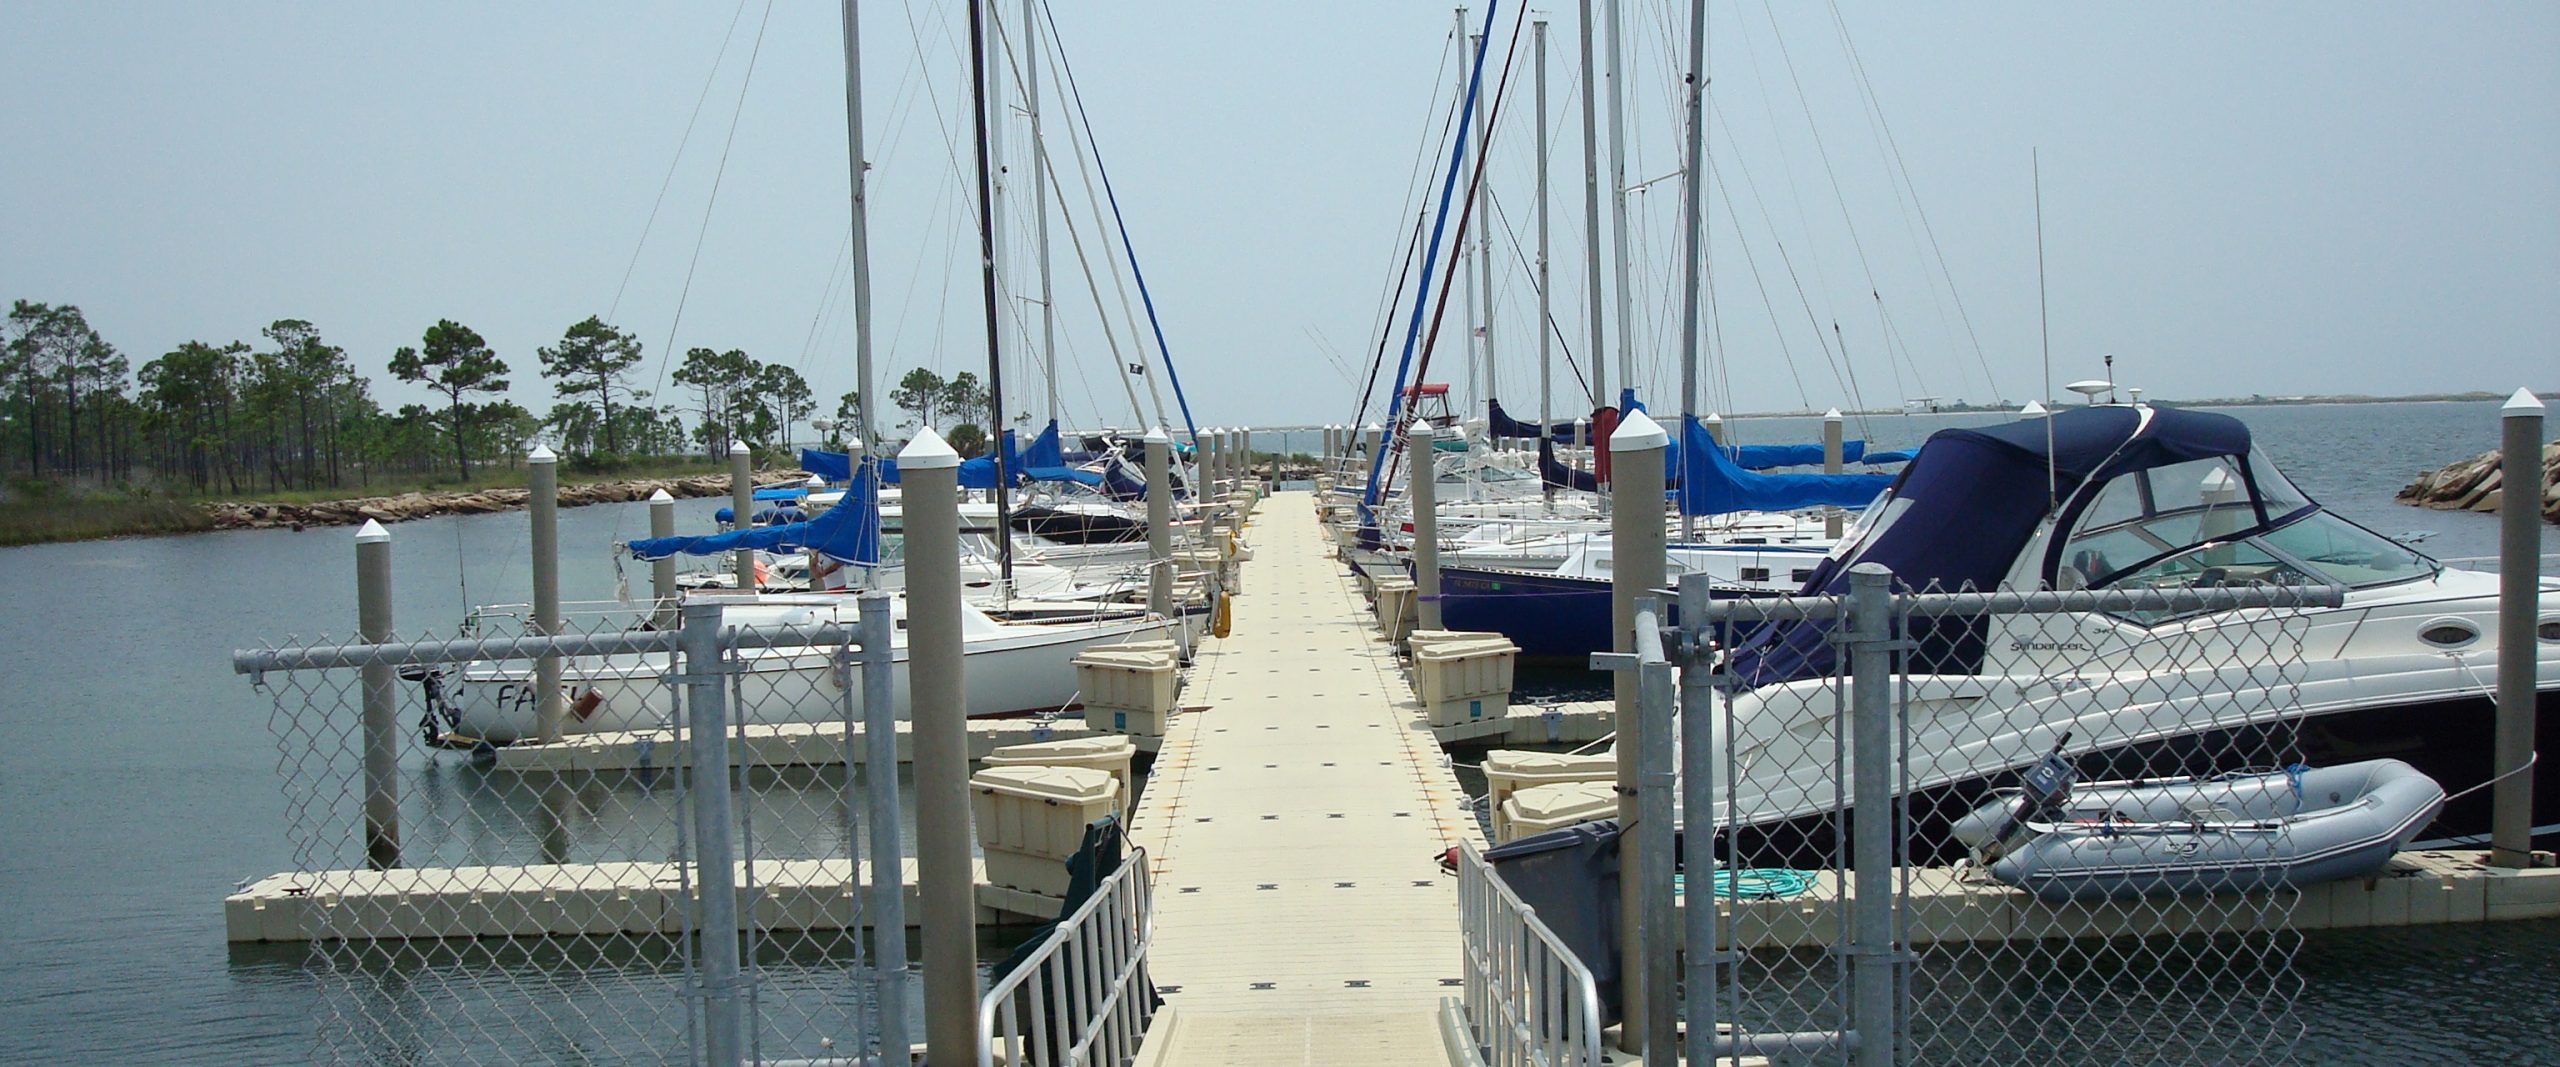 public docks